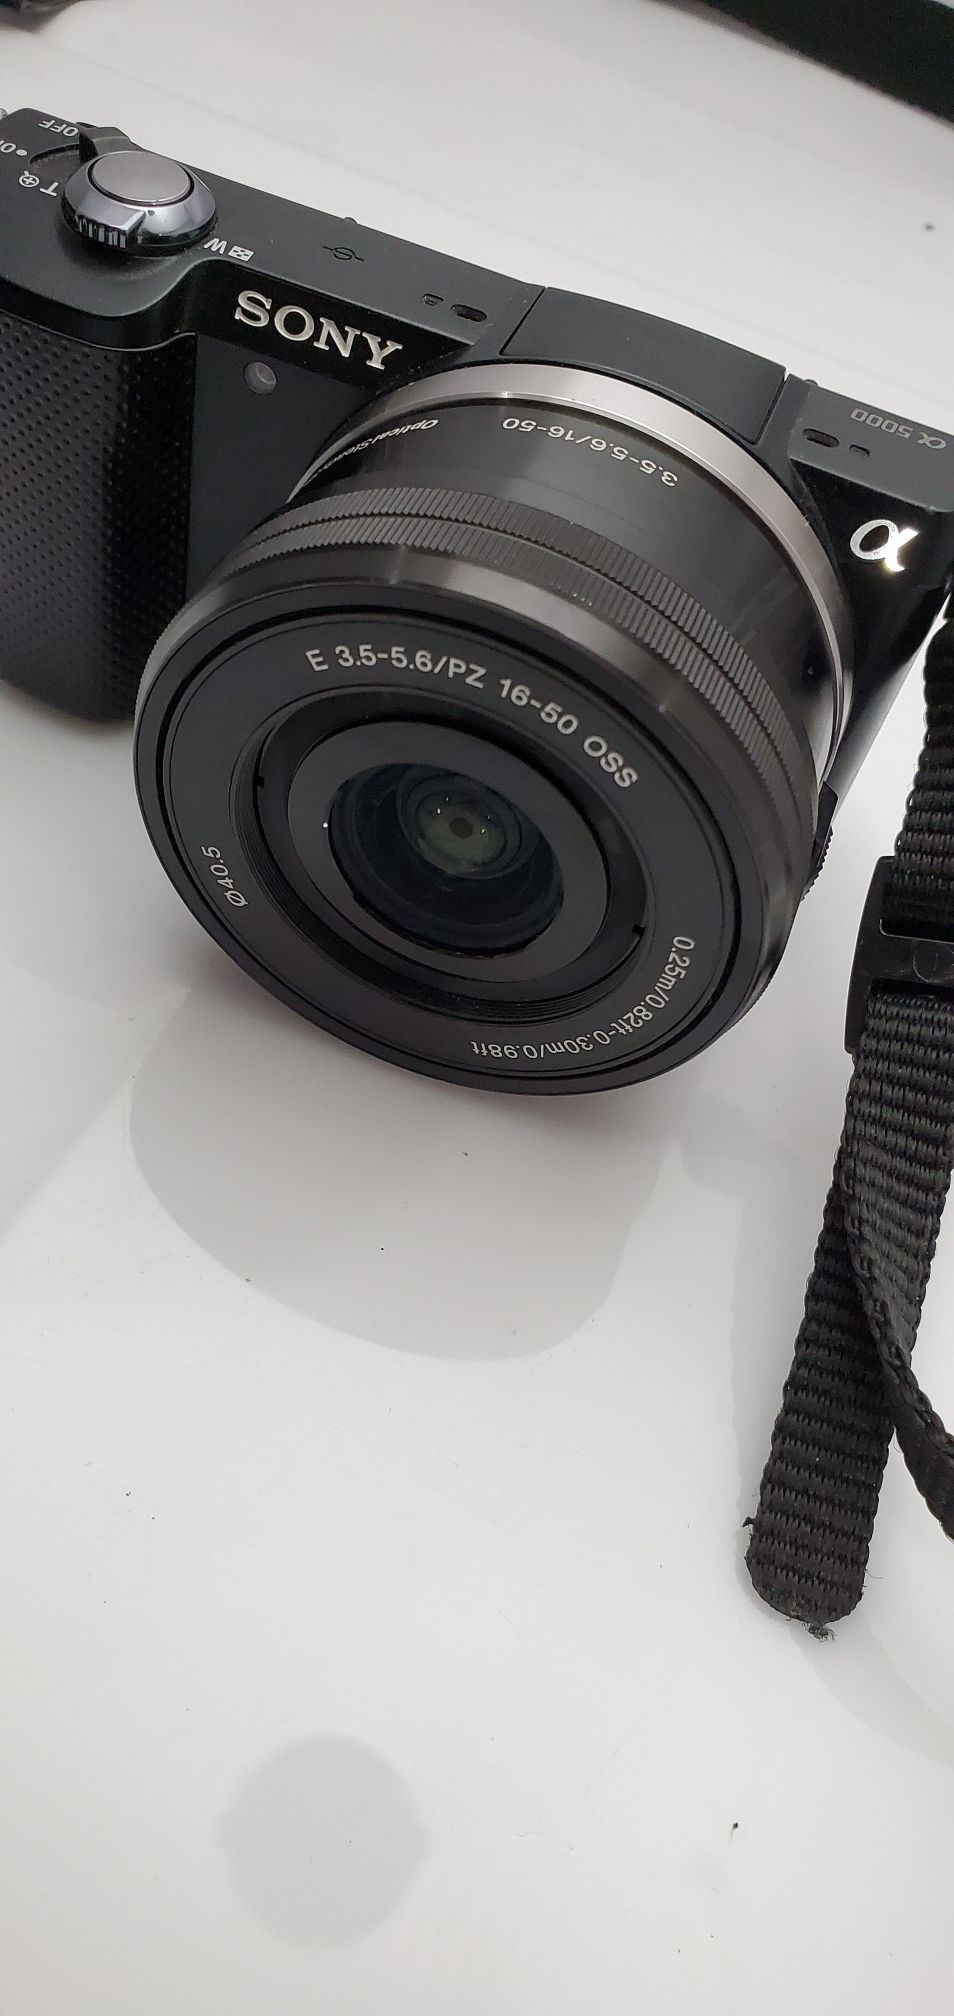 Sony a5000 lens